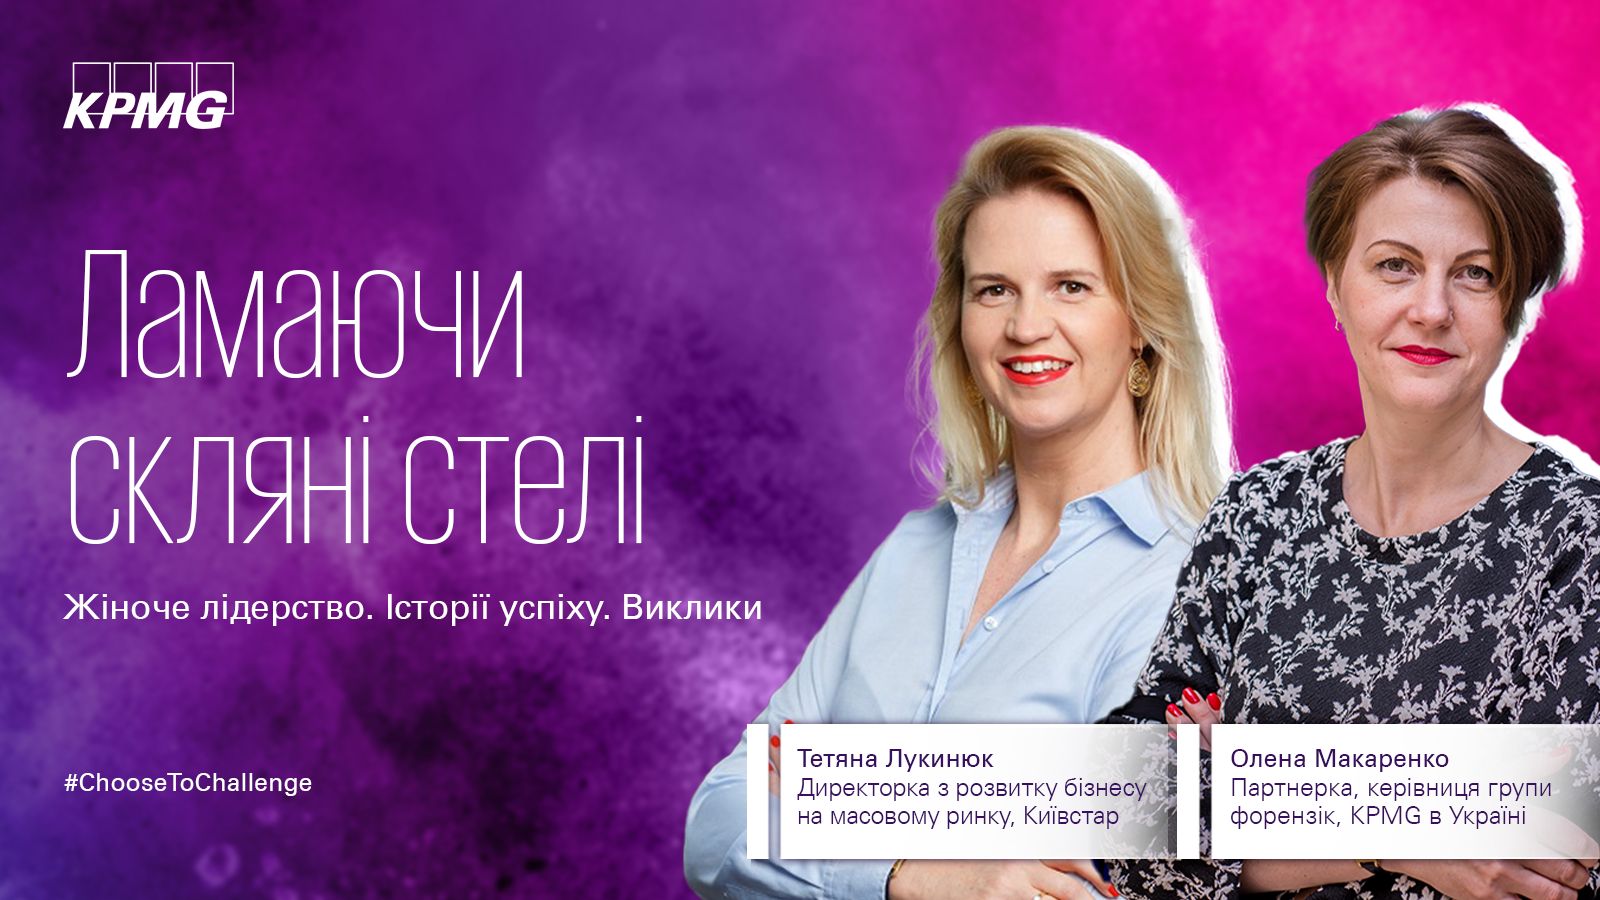 Тетяна Лукинюк, Директорка з розвитку бізнесу на масовому ринку, Київстар